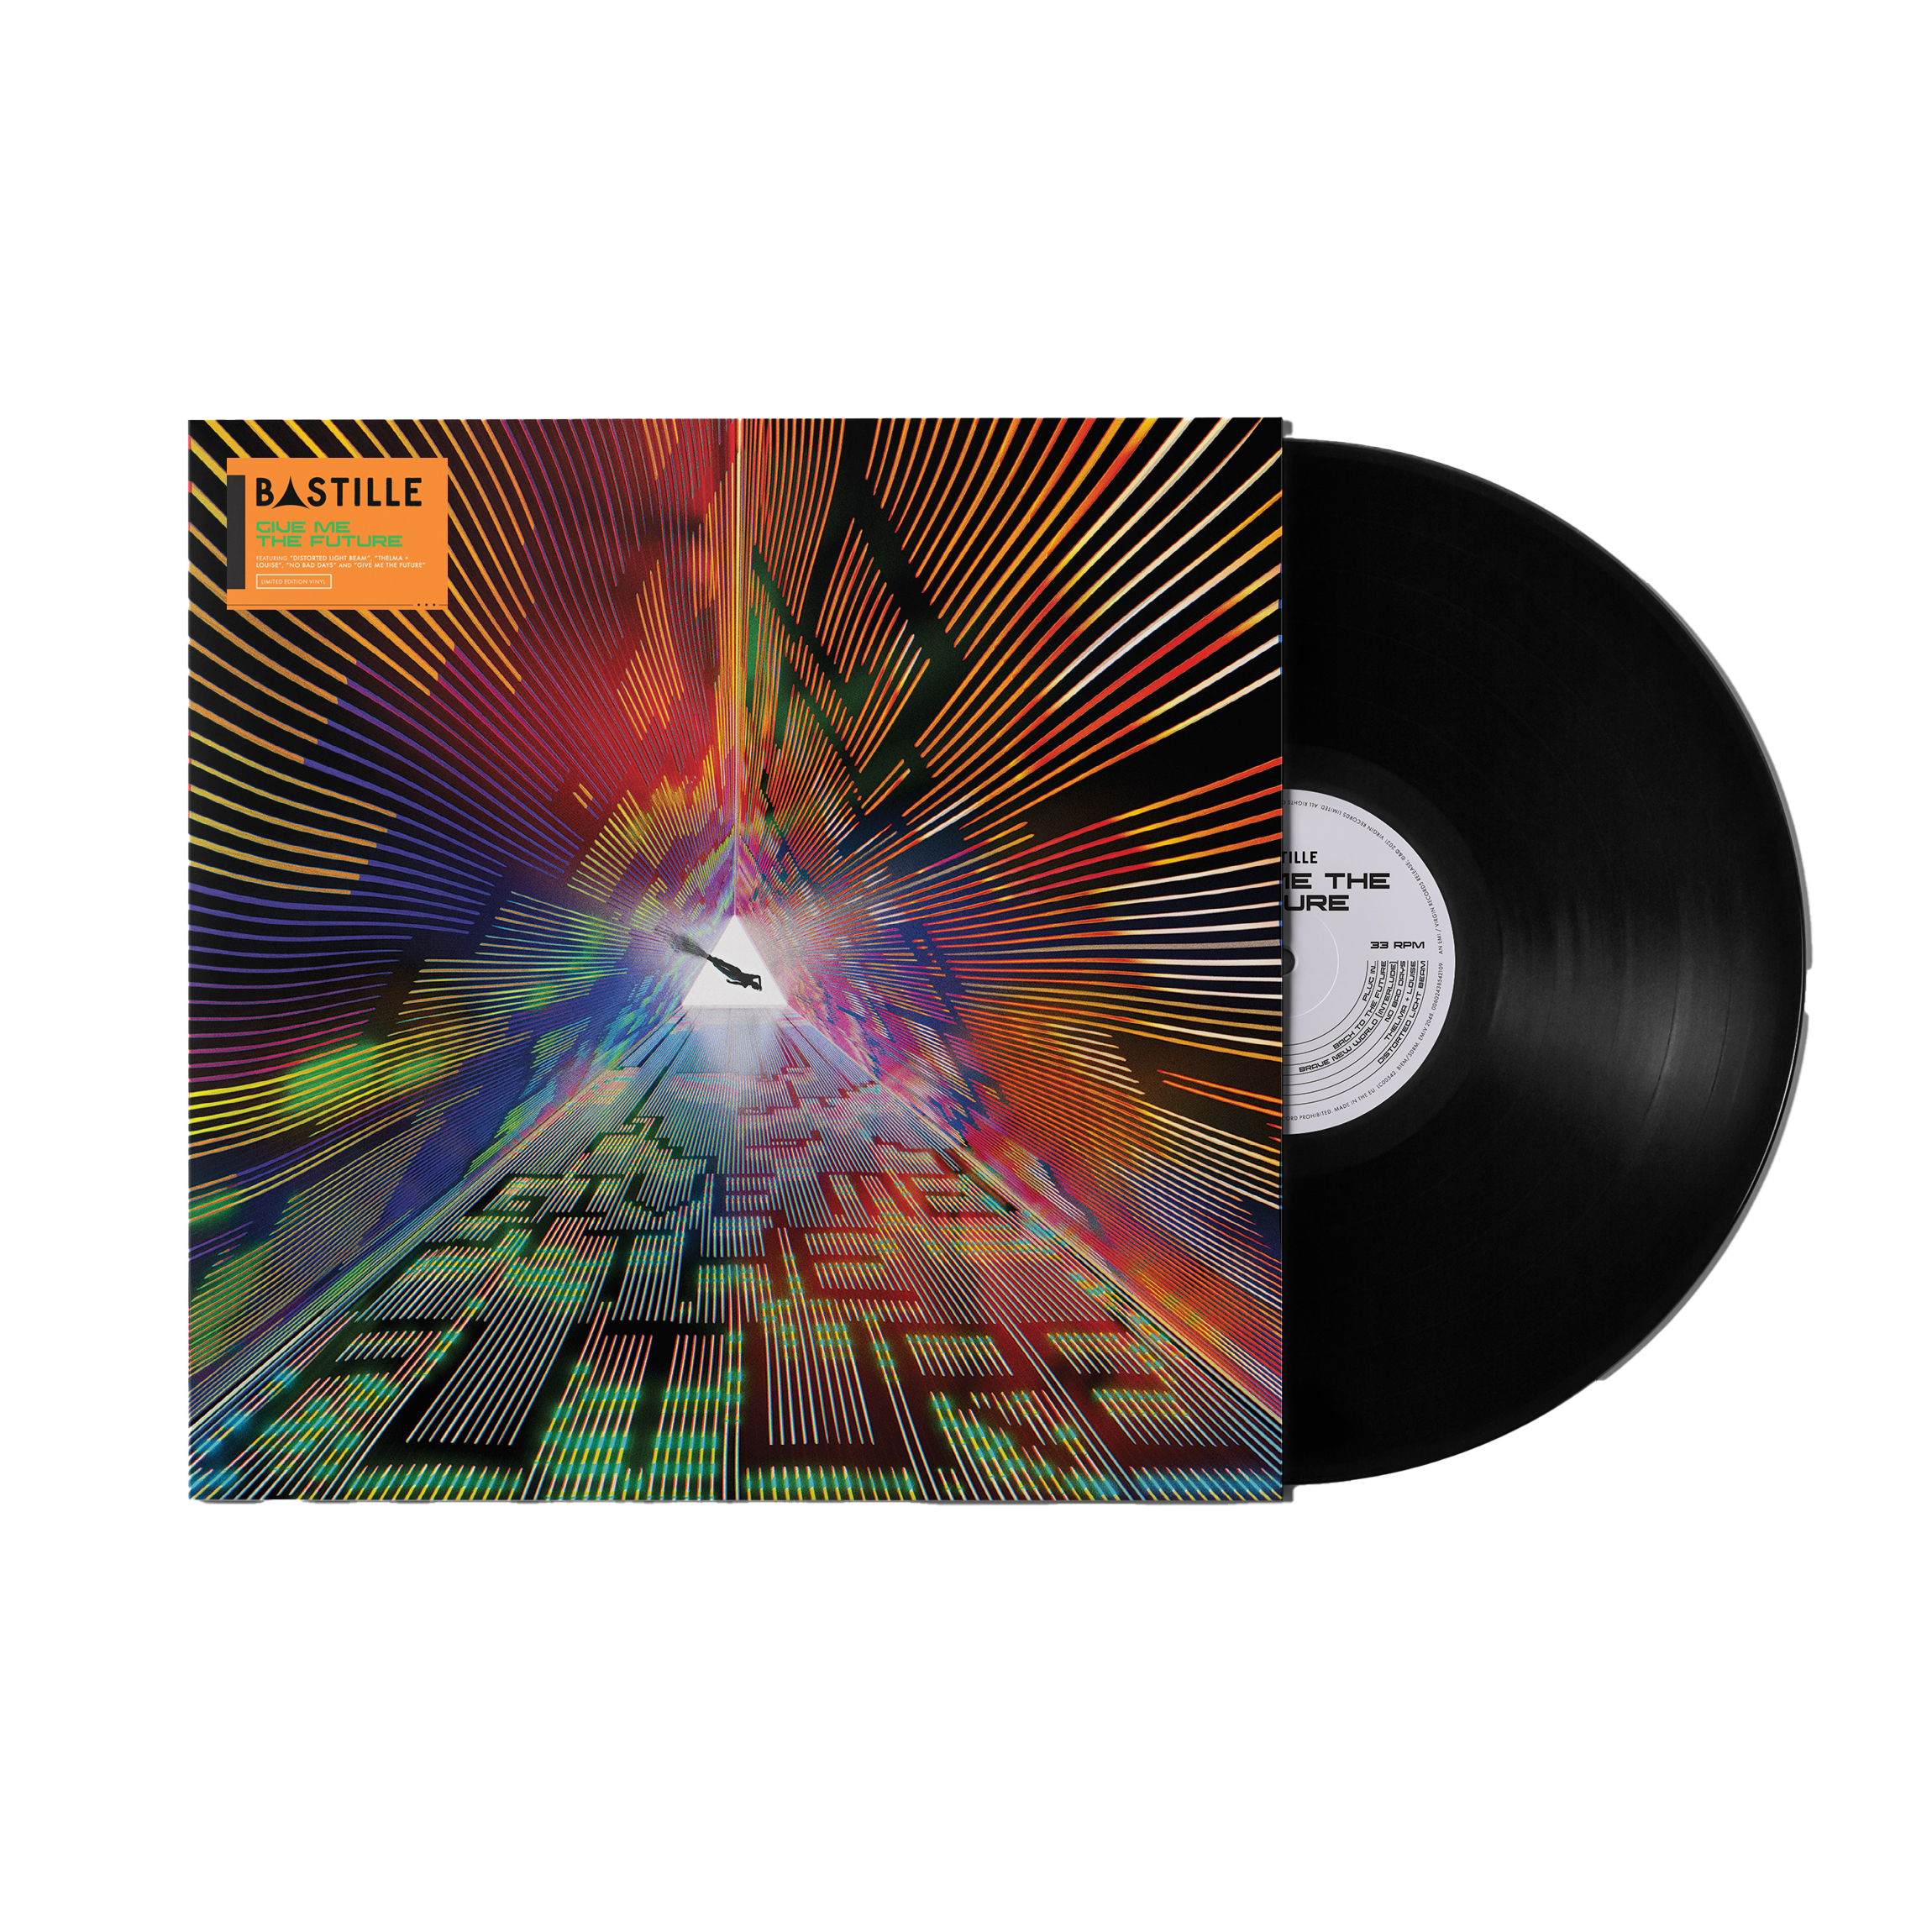 Bastille - Give Me The Future: Black Vinyl LP